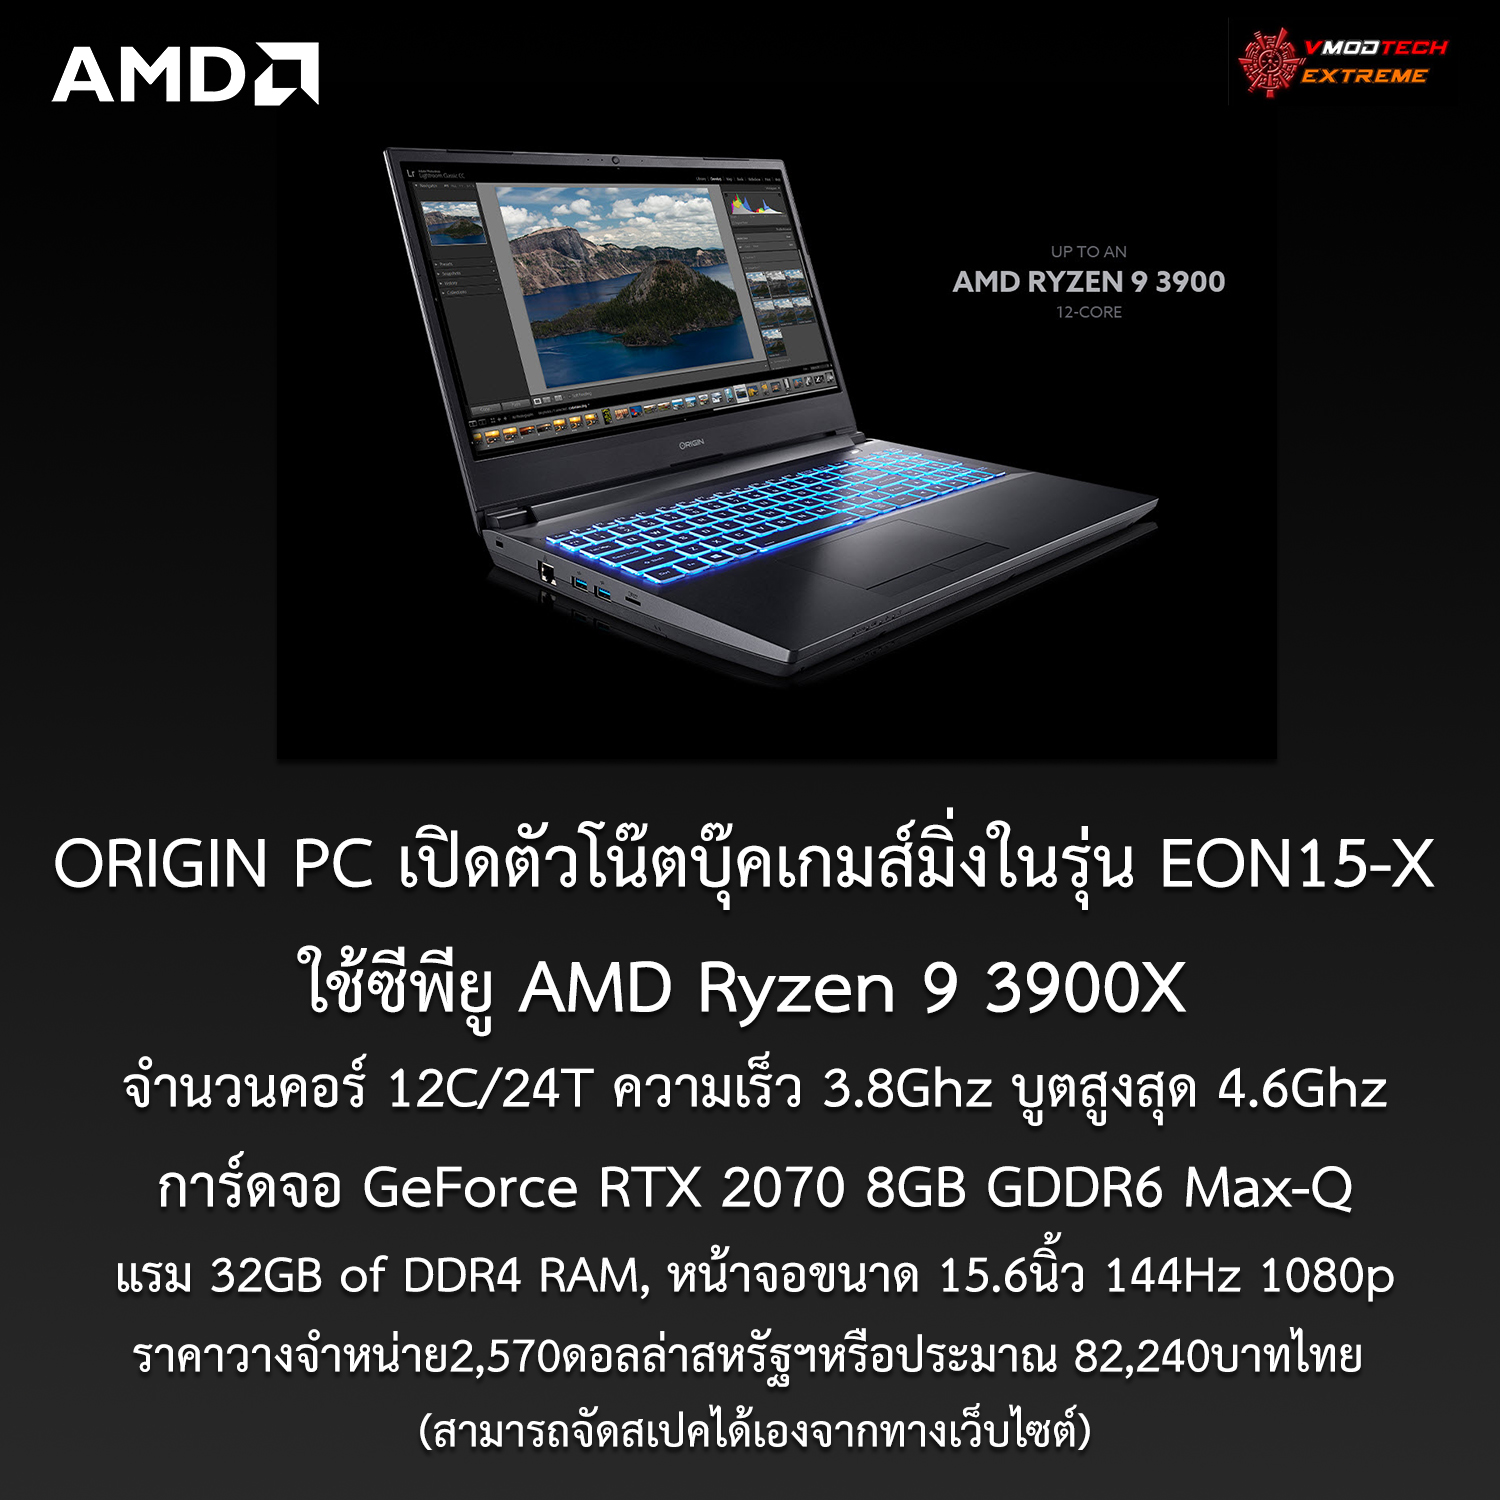 amd origin pc eon15 x amd ryzen 9 3900x 12c24t1 ORIGIN PC เปิดตัวโน๊ตบุ๊คเกมส์มิ่งในรุ่น EON15 X ที่ใช้ซีพียู AMD Ryzen 9 3900X 12C/24T และการ์ดจอ GeForce RTX 2070 รุ่นใหม่ล่าสุด